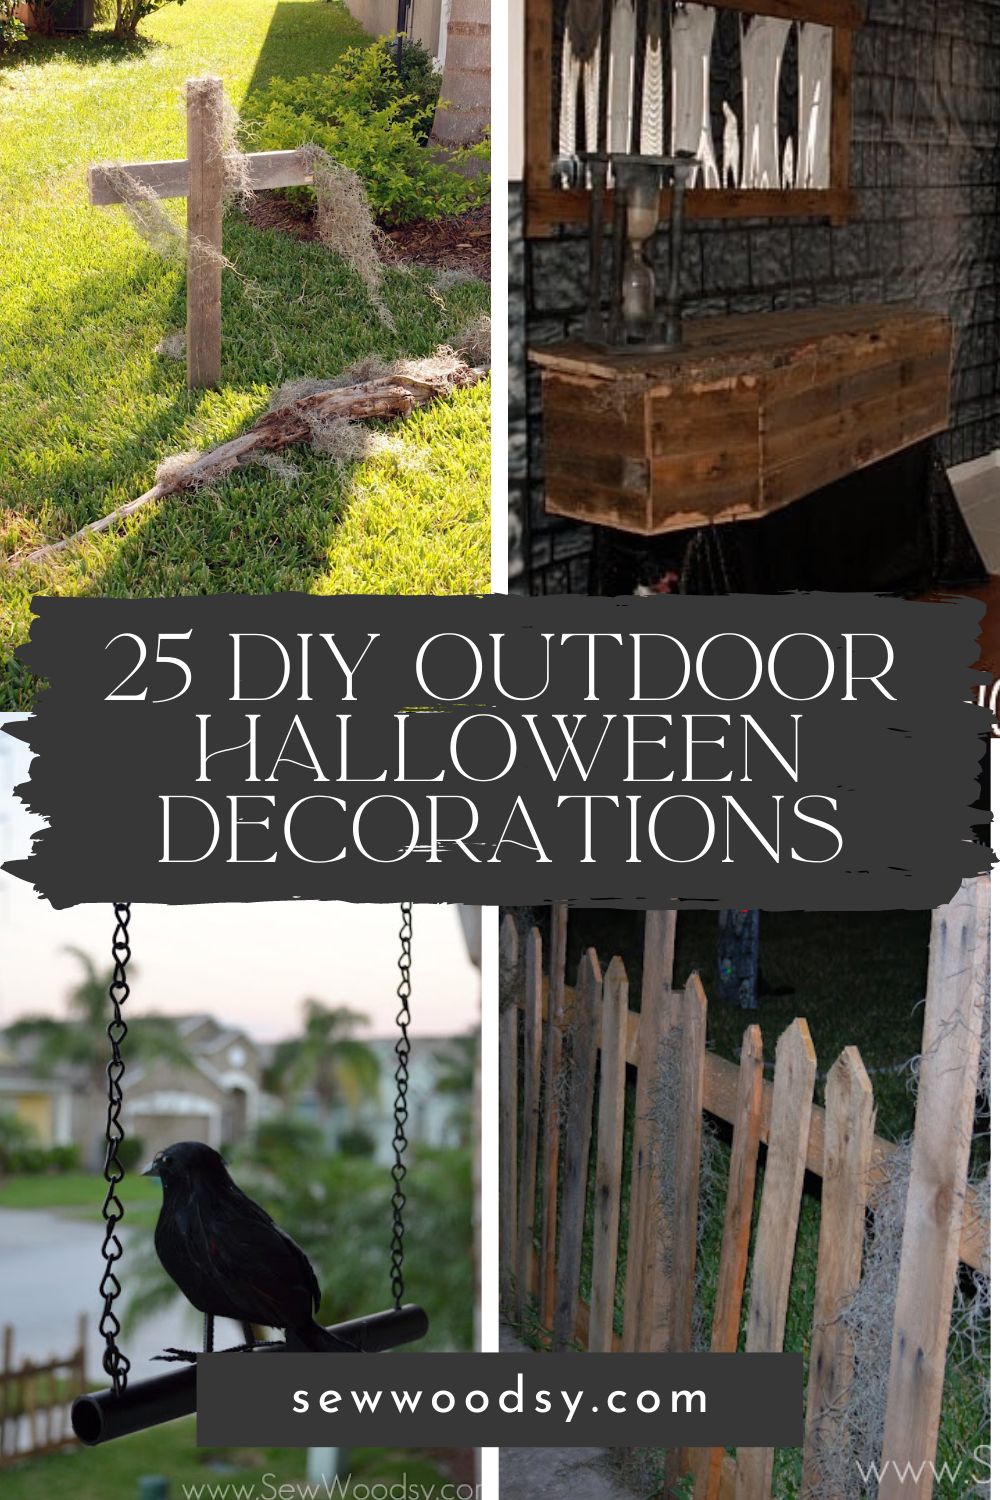 25 DIY Outdoor Halloween Decorations - Sew Woodsy